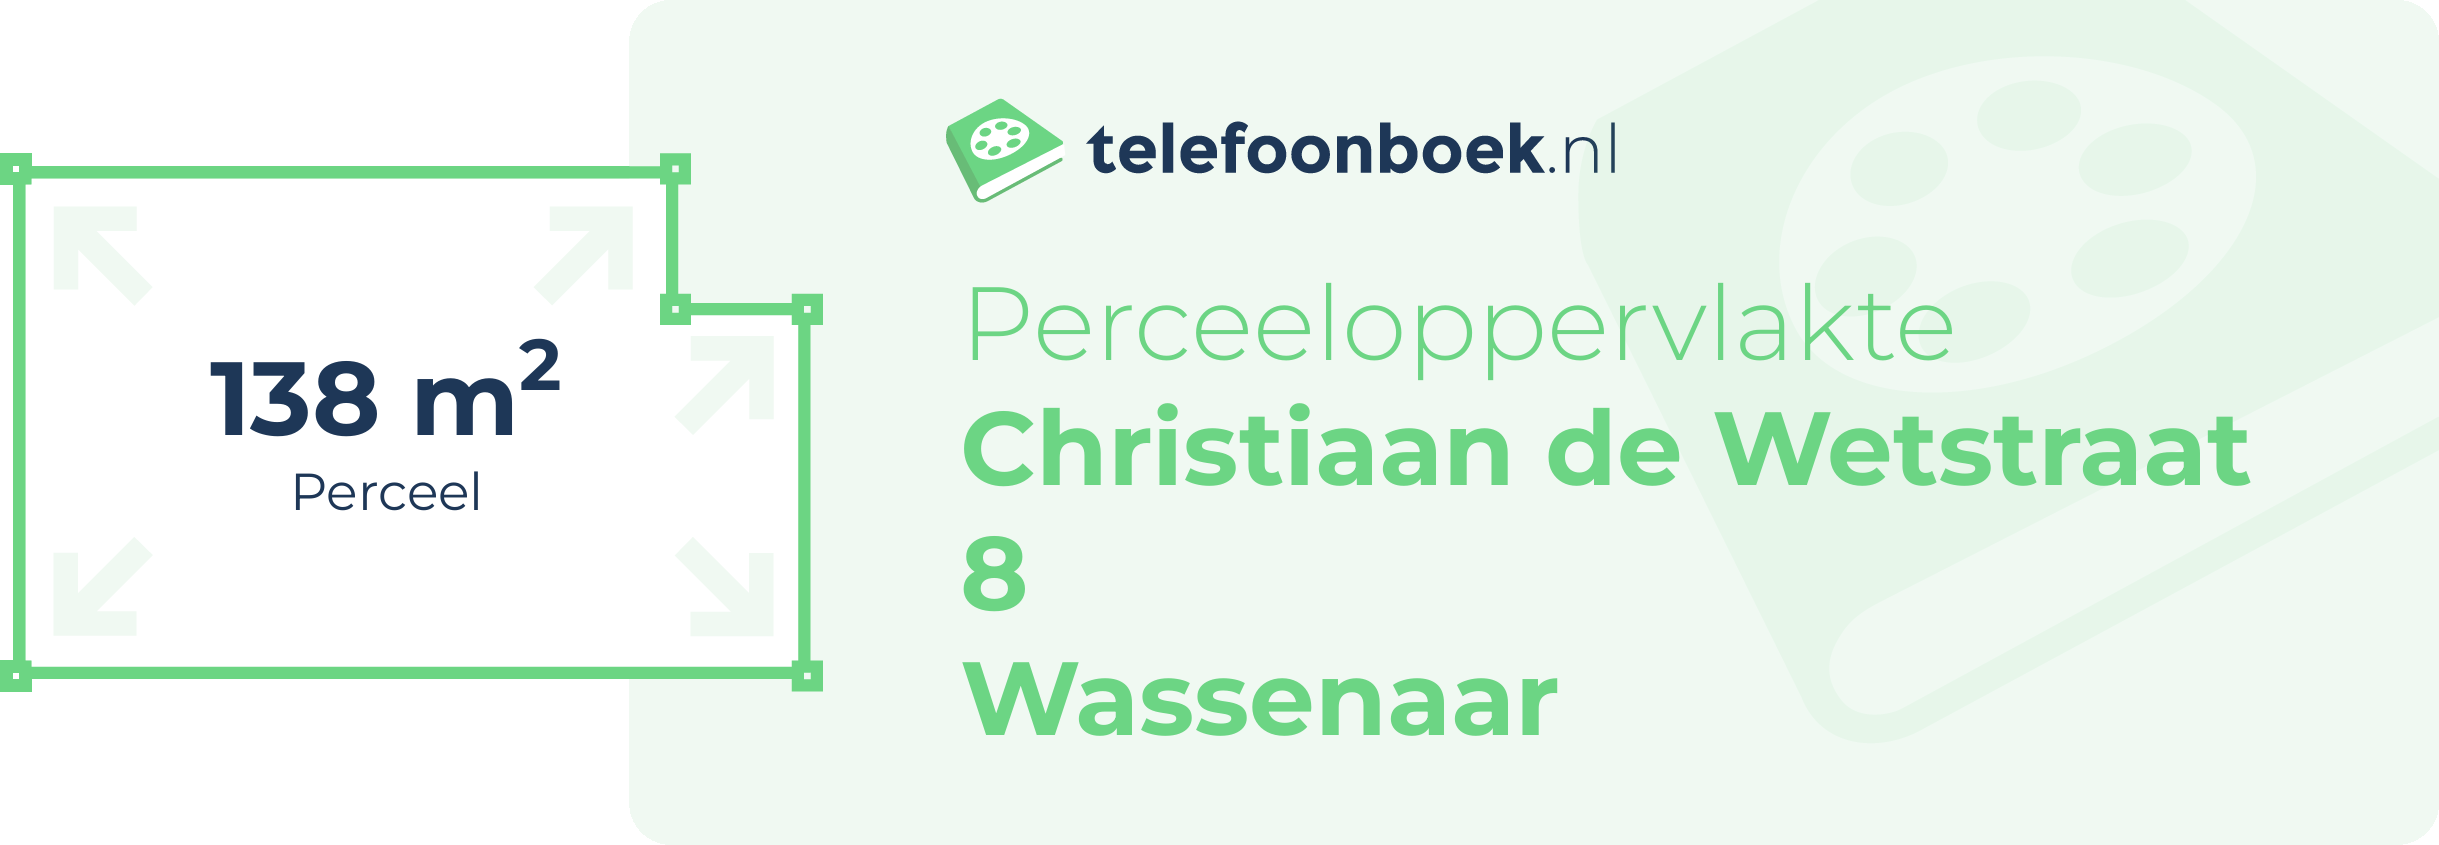 Perceeloppervlakte Christiaan De Wetstraat 8 Wassenaar